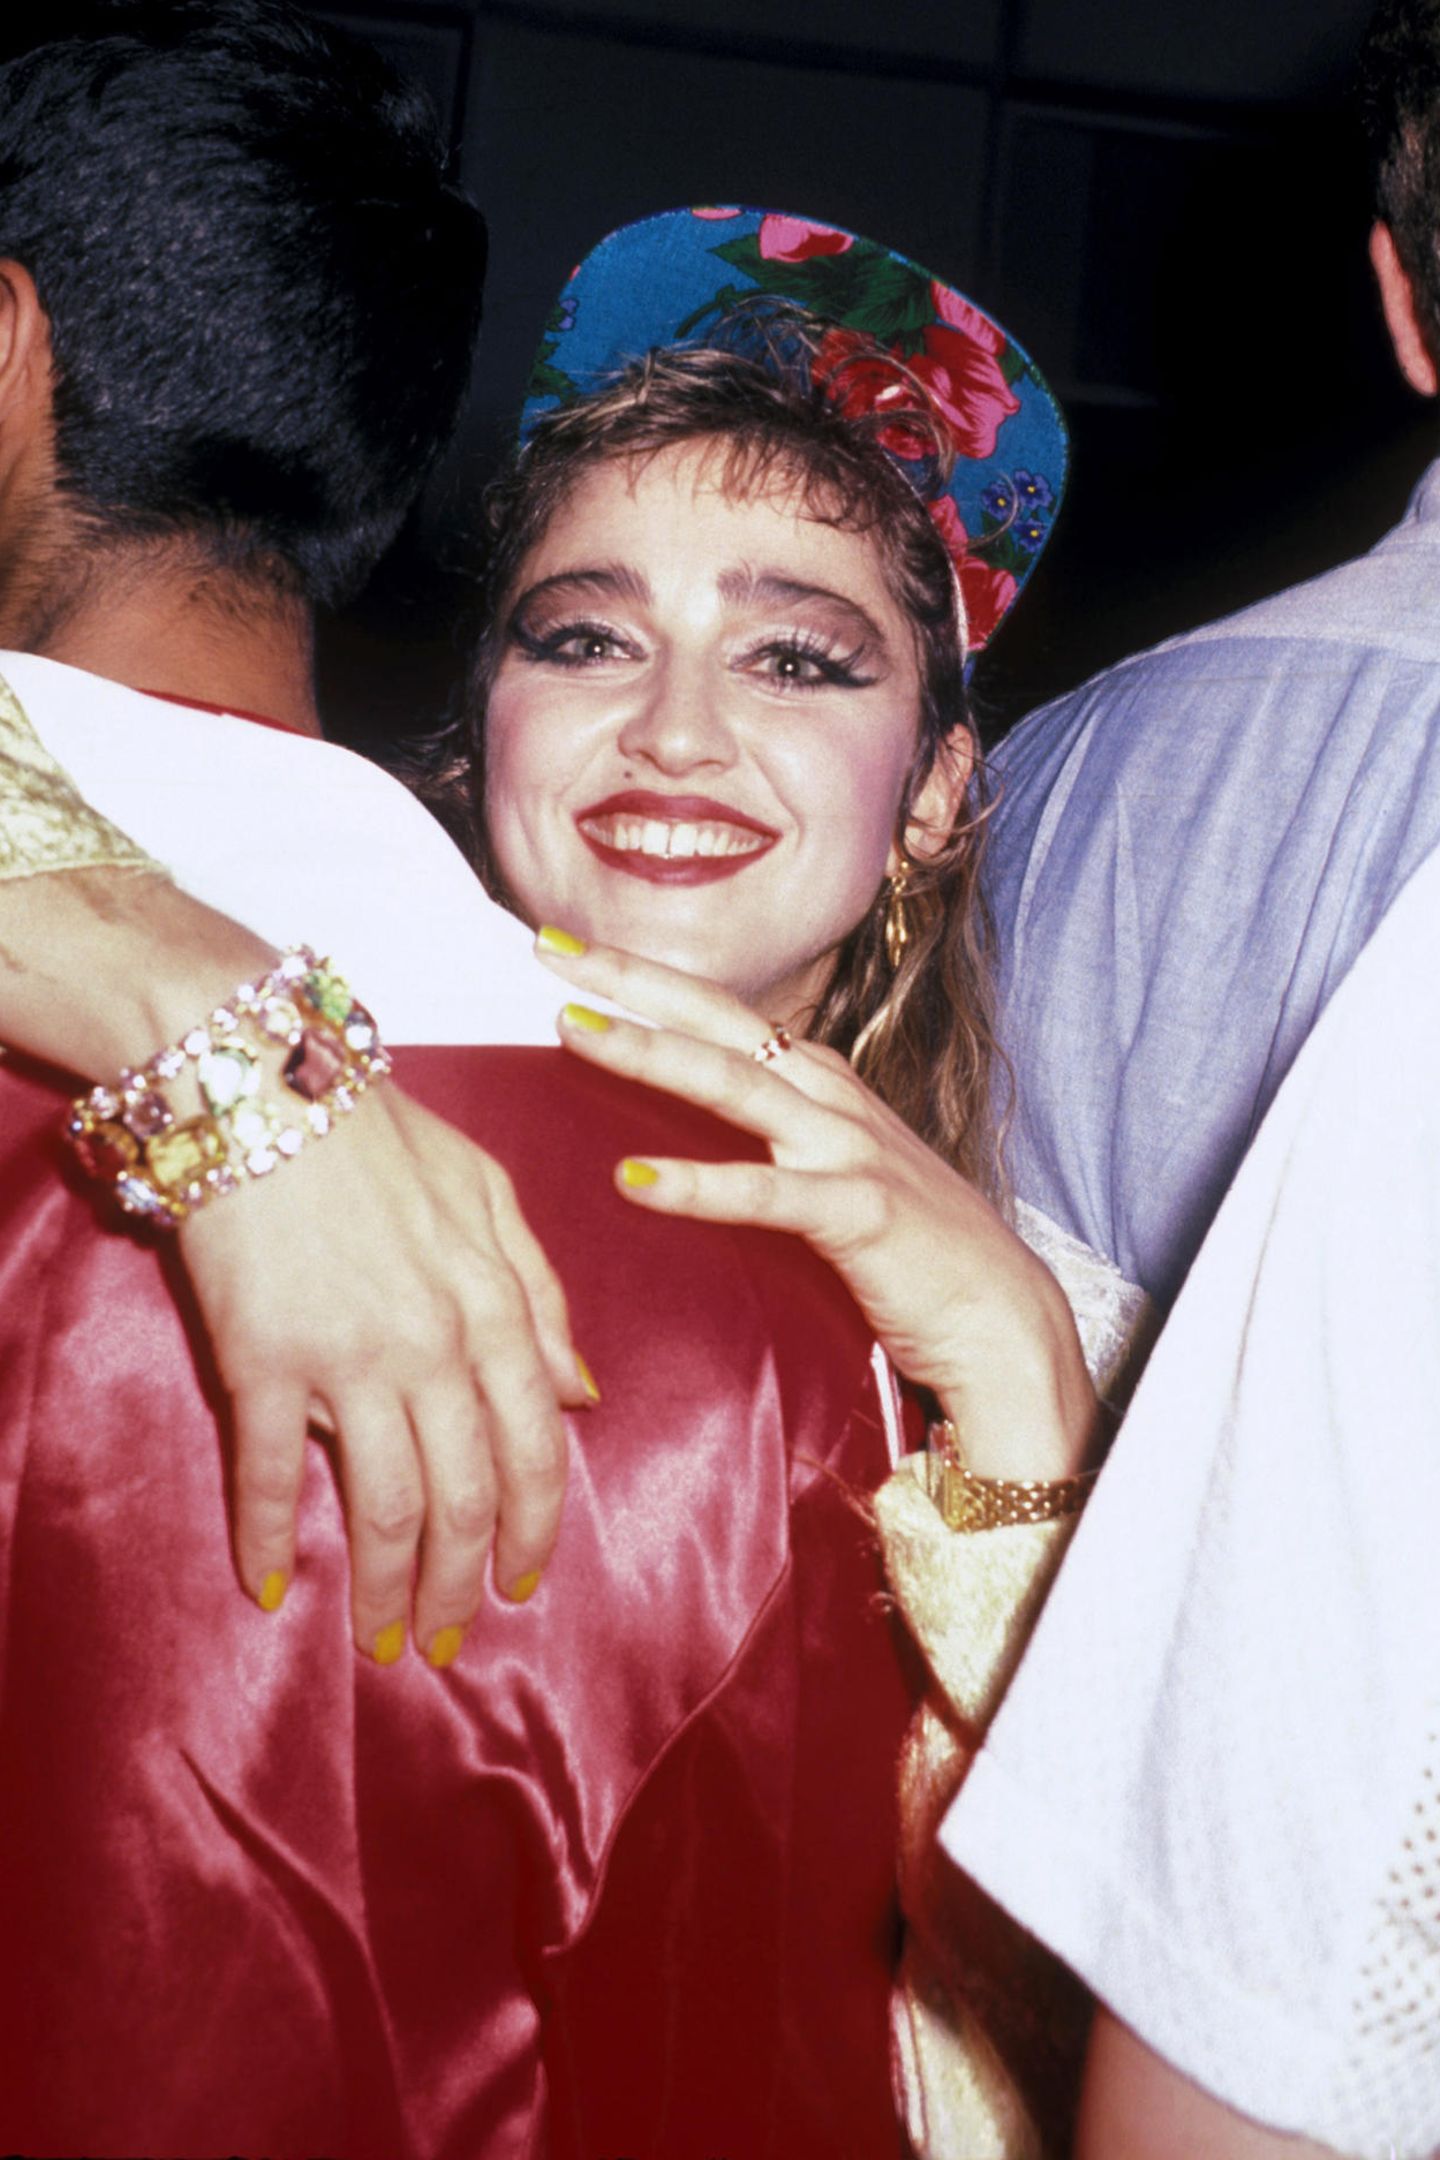 Seit 1983 ihr Debütalbum "Madonna" erschien, prägt die Popqueen ganze Generationen sowohl mit ihrer Musik als auch mit ihren immer neuen Selbstinszenierungen. Zum 60. Geburtstag zeigen wir die schrägsten Looks der Stil-Ikone.